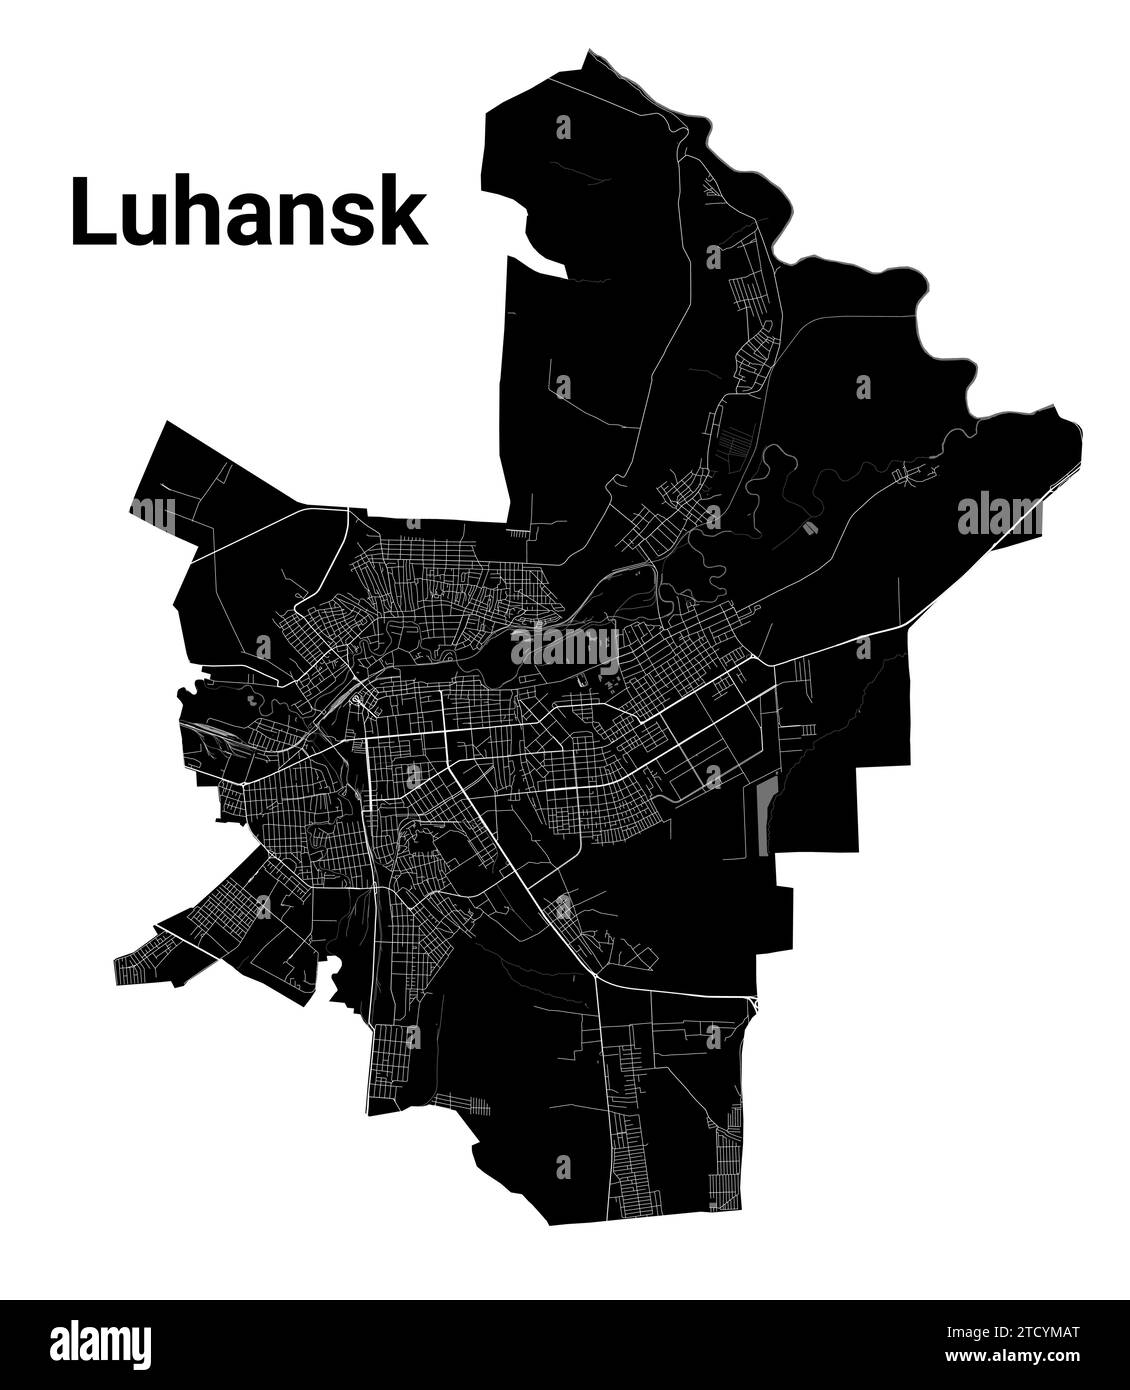 Plan de Luhansk, Ukraine. Frontières administratives municipales, carte en noir et blanc avec rivières et routes, parcs et voies ferrées. Illustration vectorielle. Illustration de Vecteur